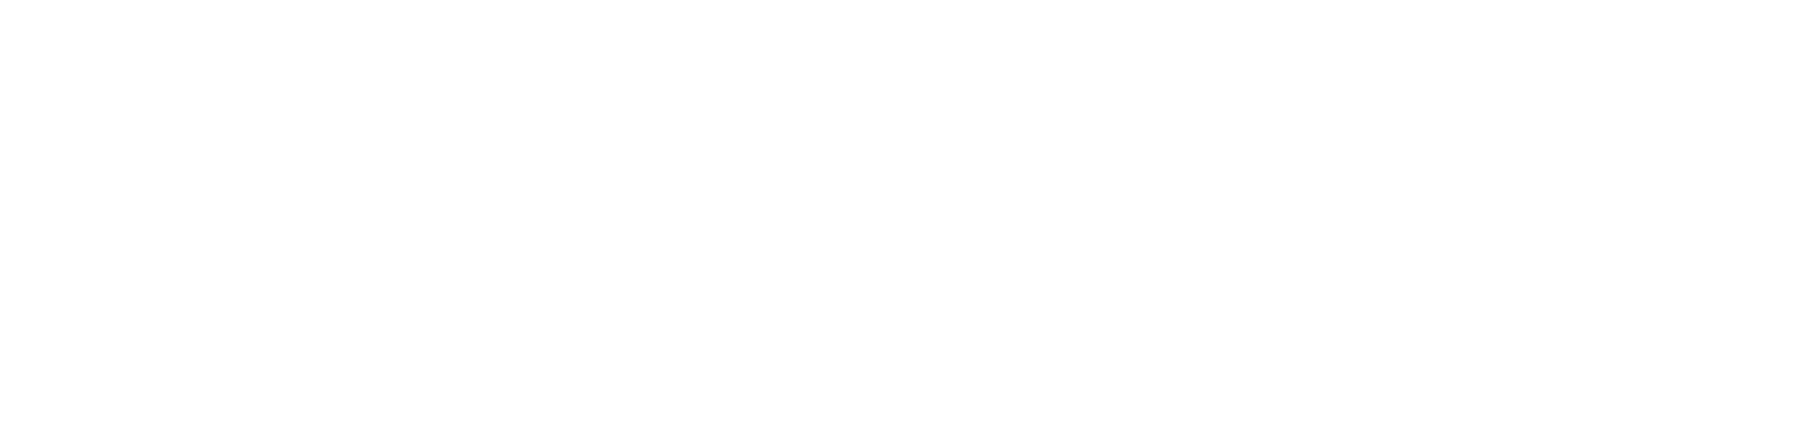 Purpose Led Publishing Logo